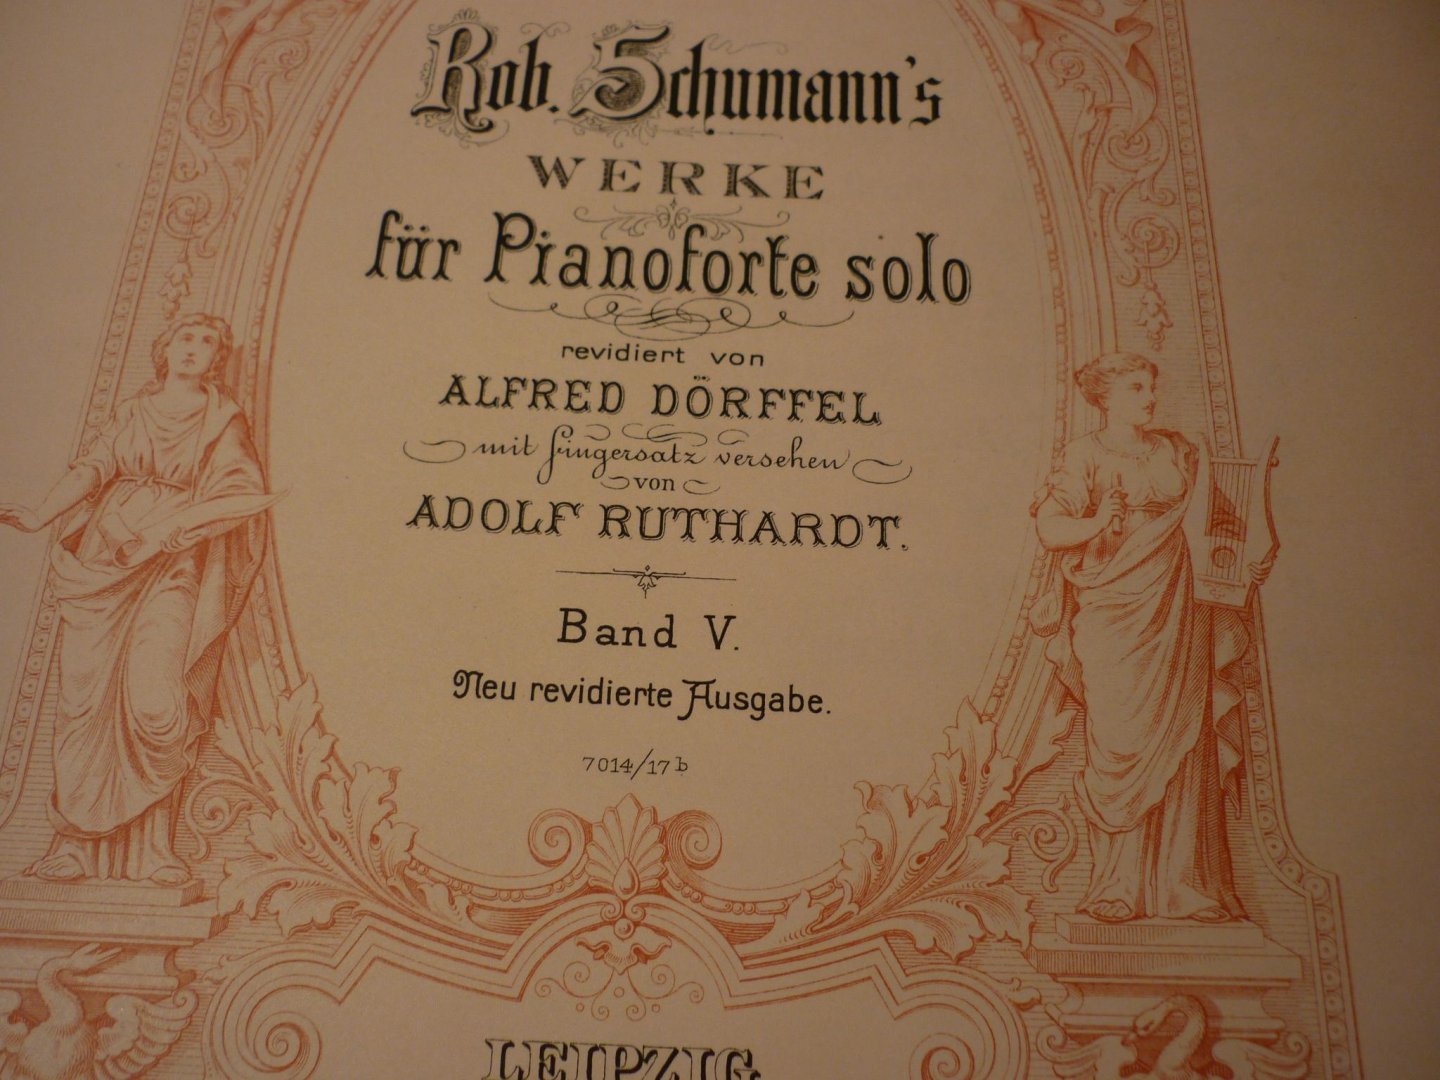 Schumann; Robert (1810-1856) - WERKE fur Pianoforte solo - Band V; revidiert von Alfred Dorffel mit fingersatz versehen von Adolf Ruthardt